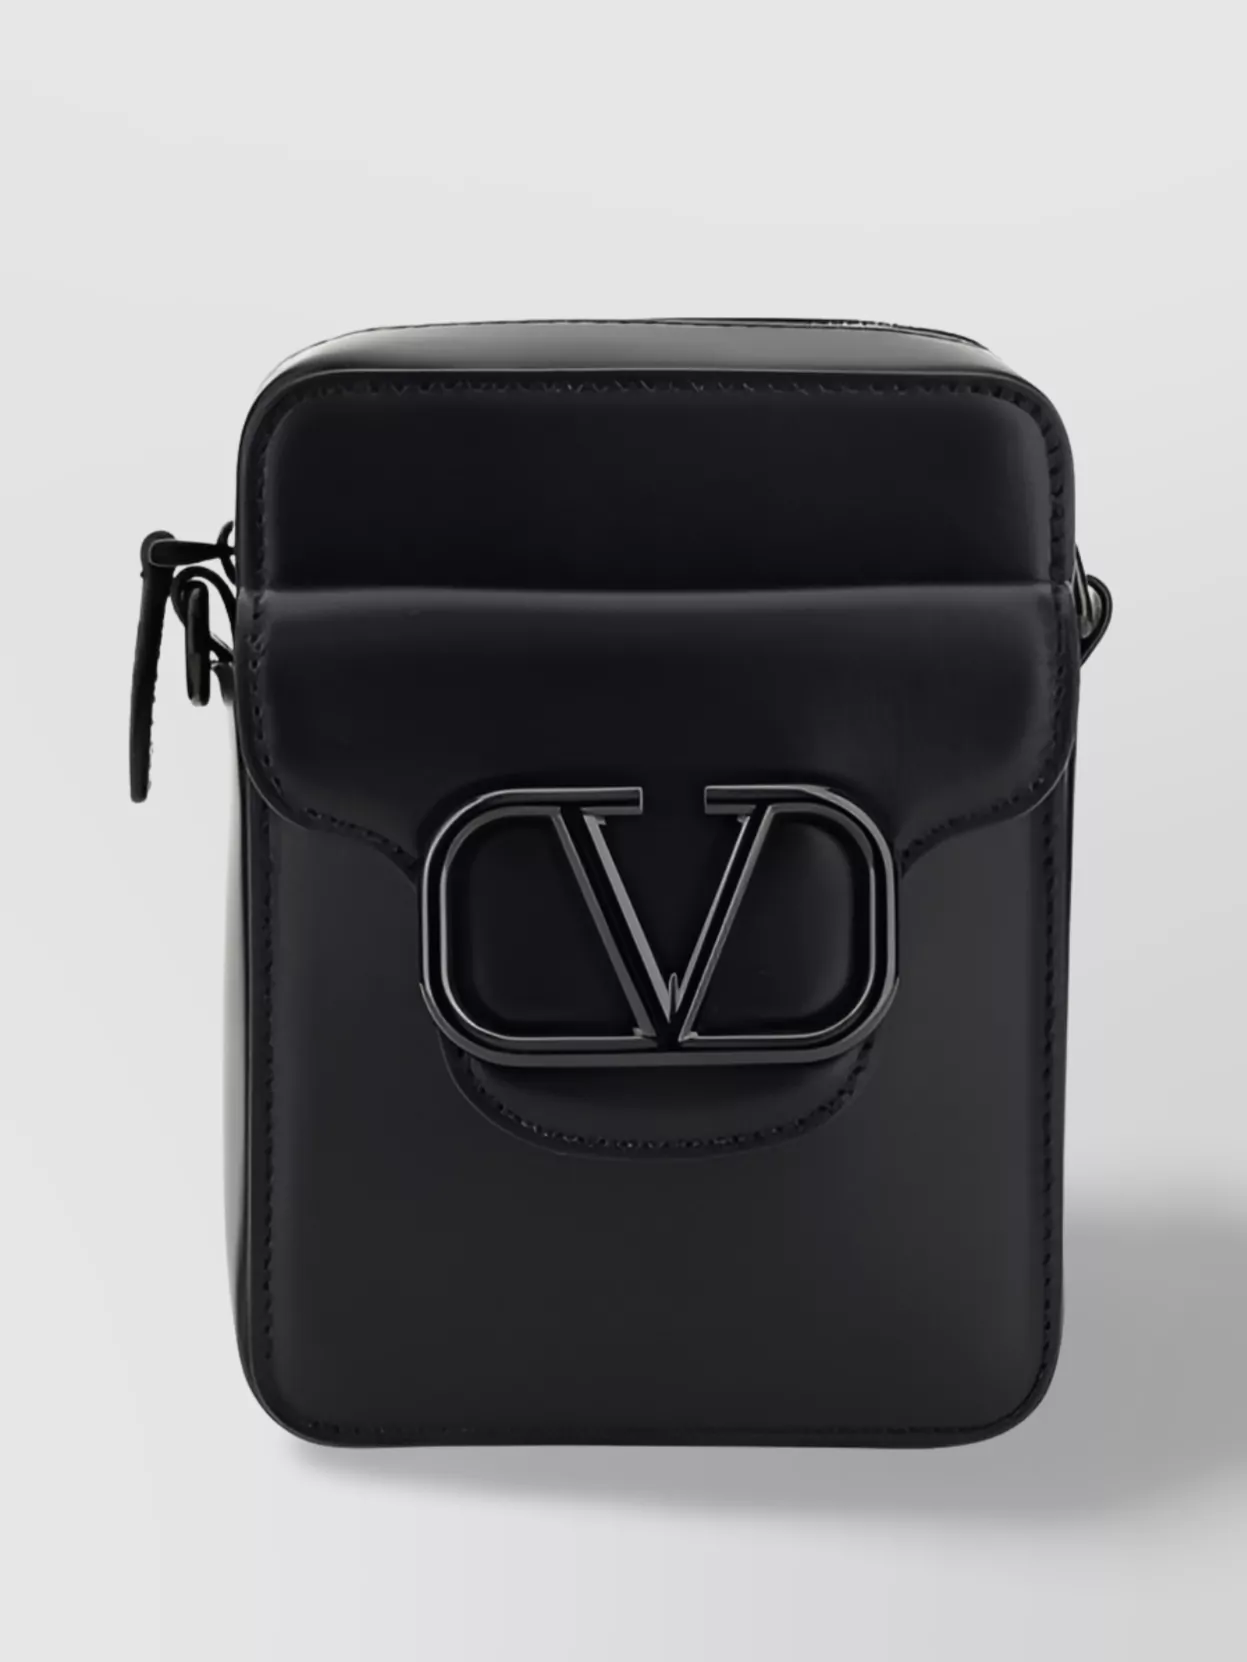 Valentino Garavani Mini Locò Shoulder Bag In Black